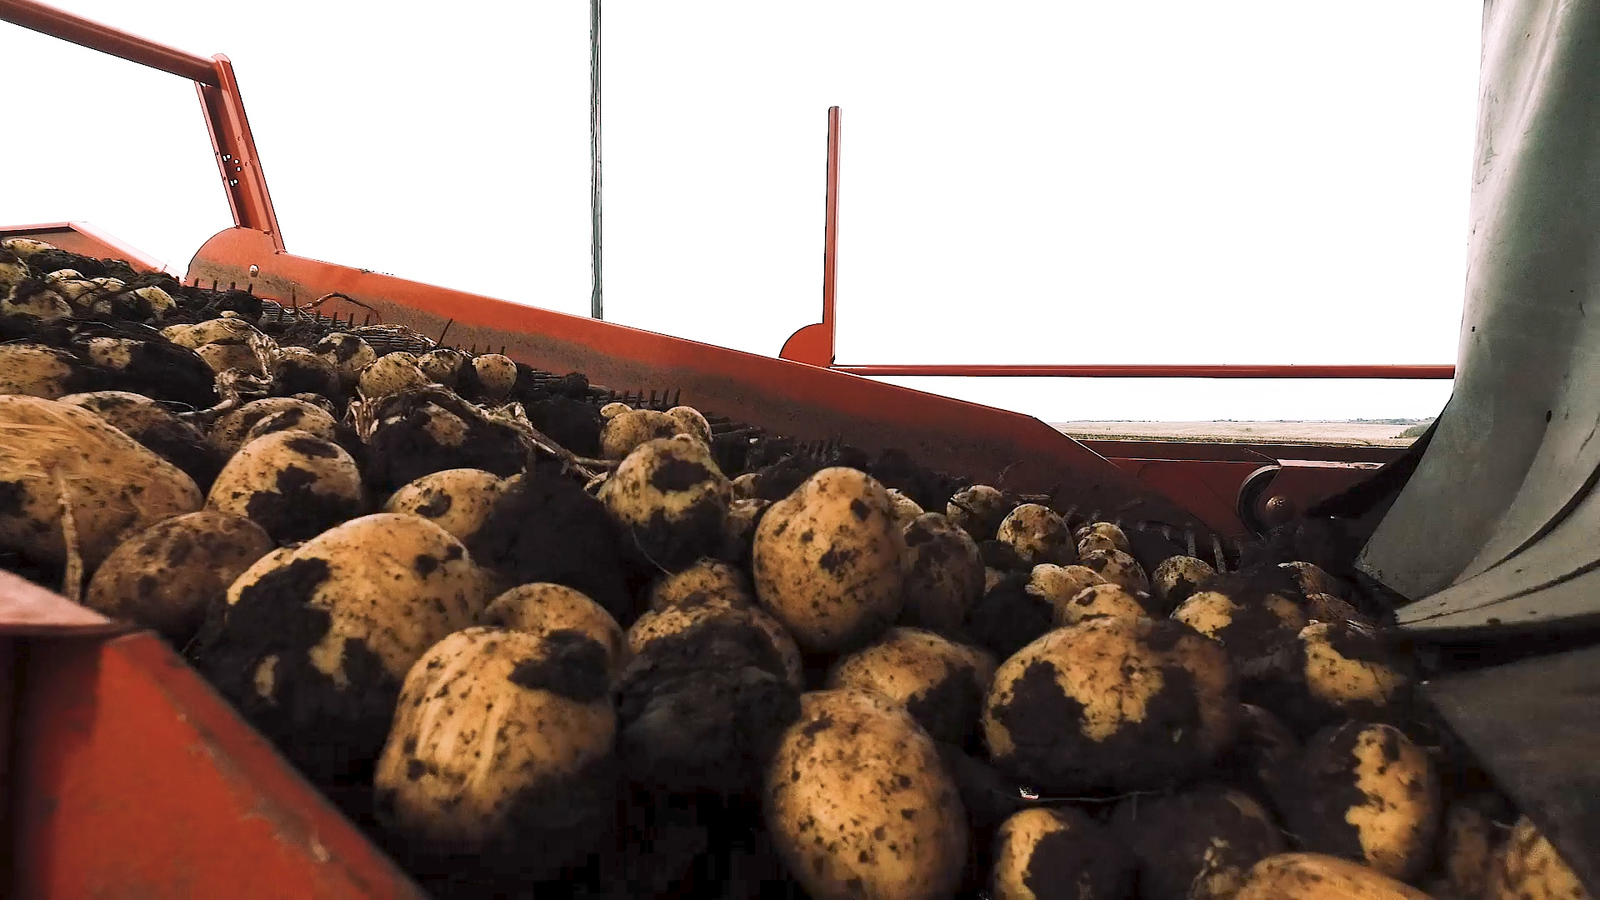 Как выращивают картофель картофель, картофеля, клубни, посадки, времени, потом, семена, репродукция, просто, часть, Европе, используются, средней, создается, используется, хорошо, Перед, появляются, может, после